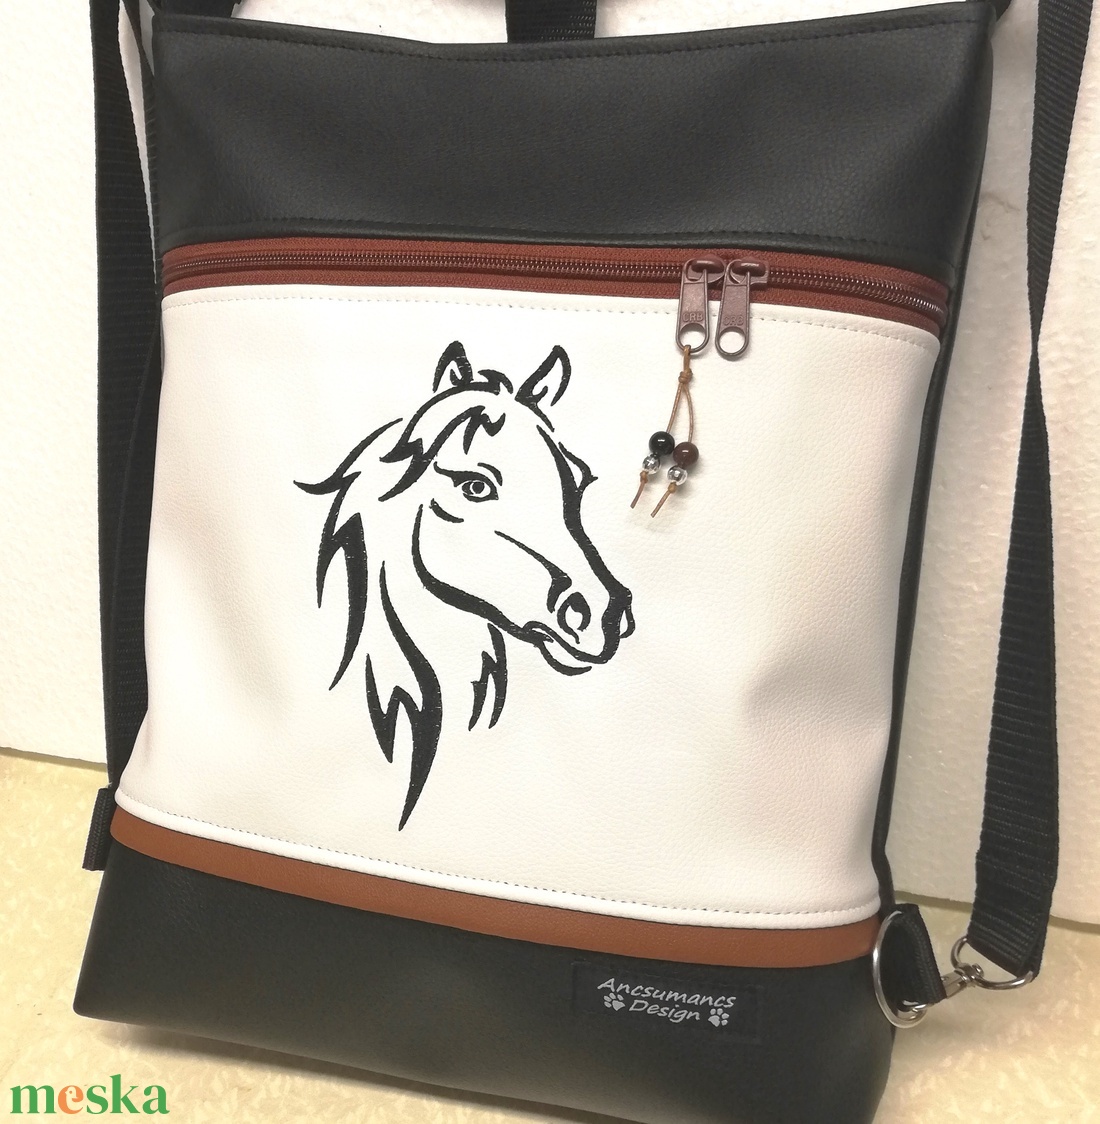 3in1 hímzett lovas női hátizsák divattáska oldaltáska fekete-fehér - táska & tok - variálható táska - Meska.hu